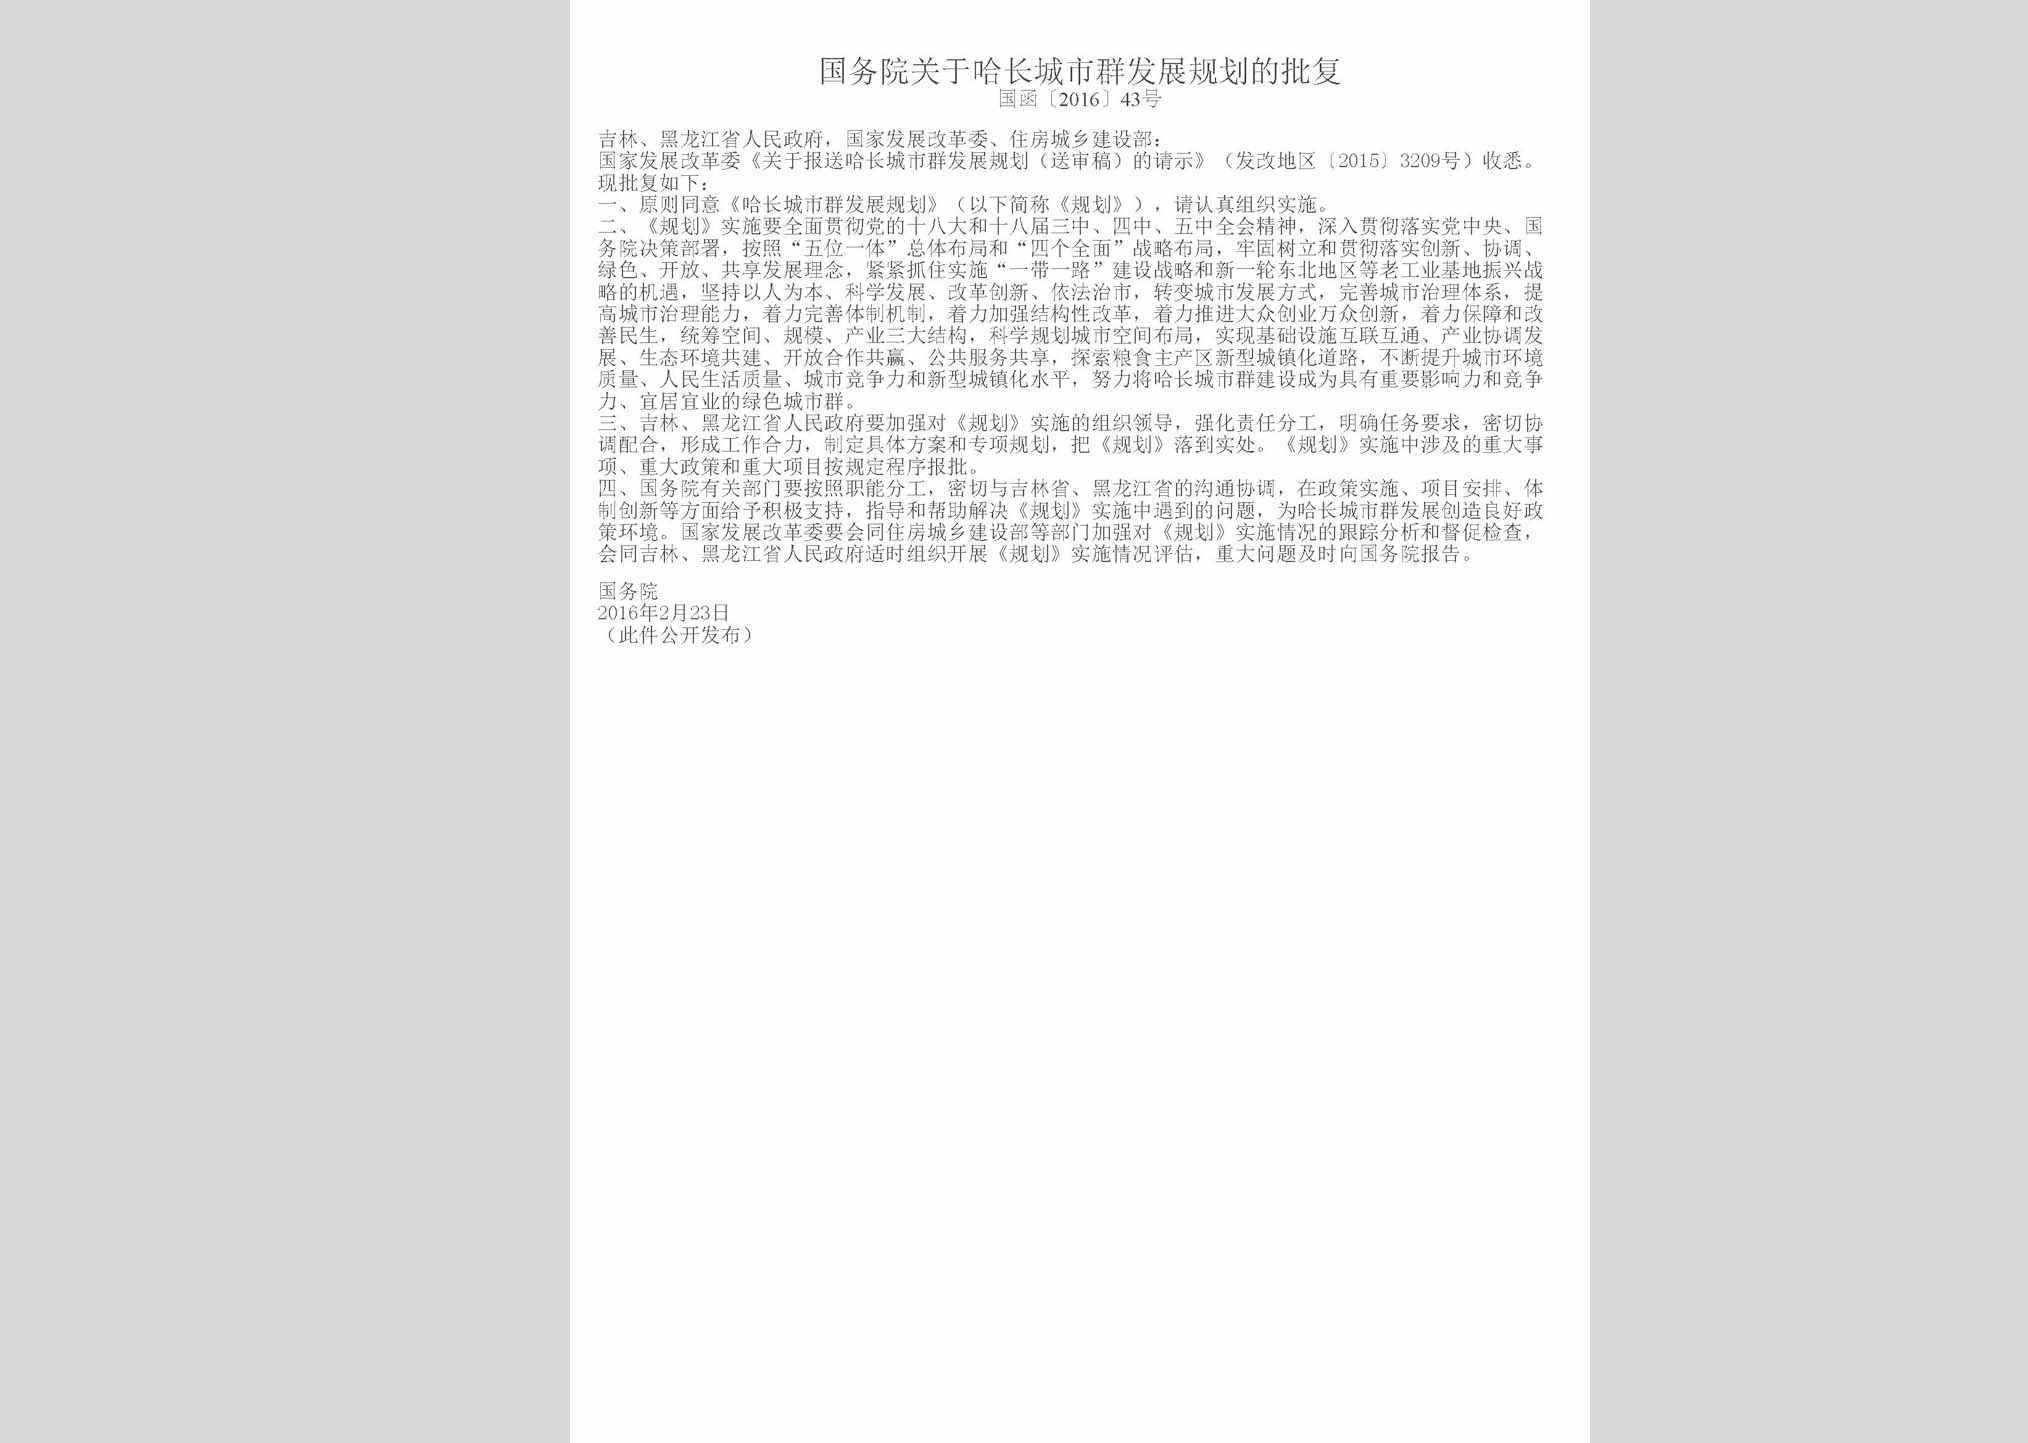 国函[2016]43号：国务院关于哈长城市群发展规划的批复